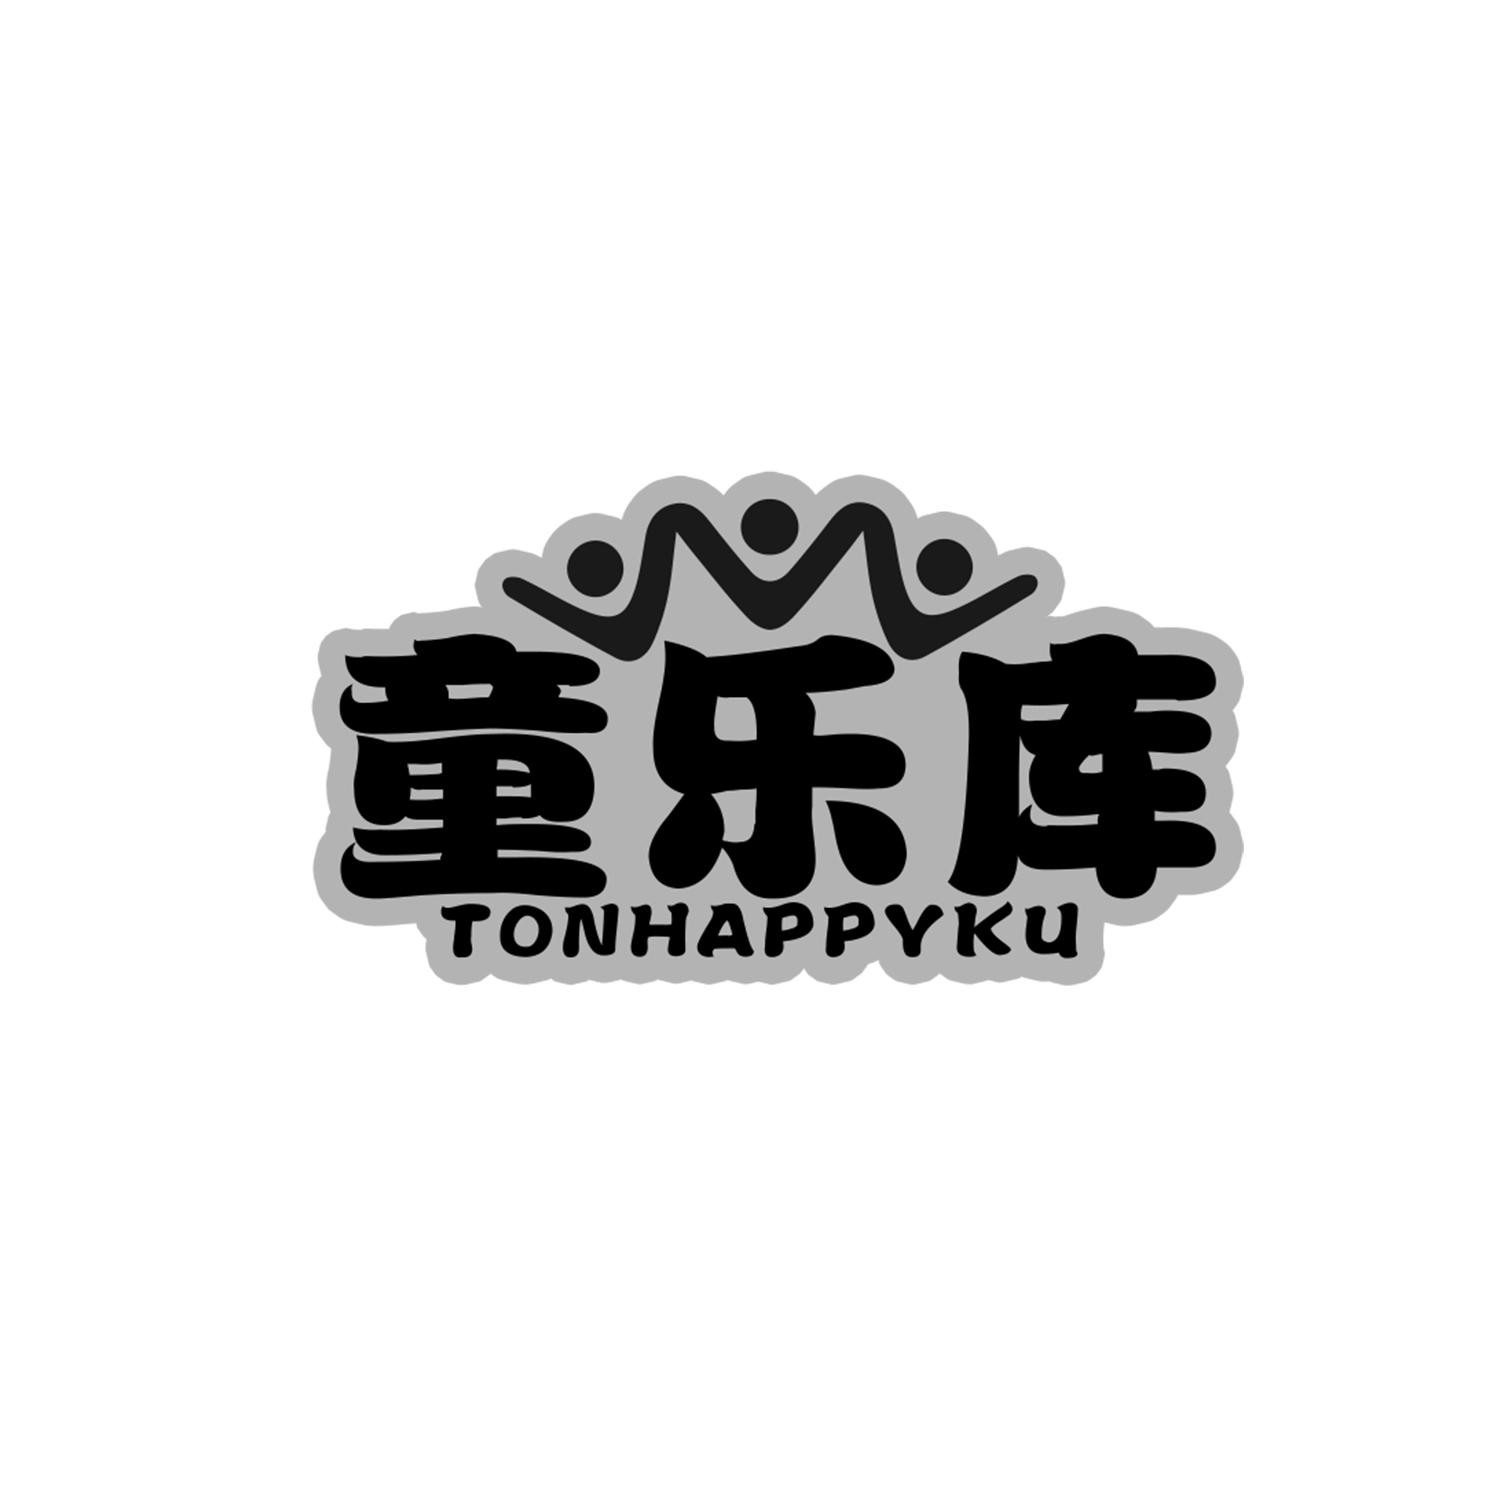 童乐库
tonhappyku